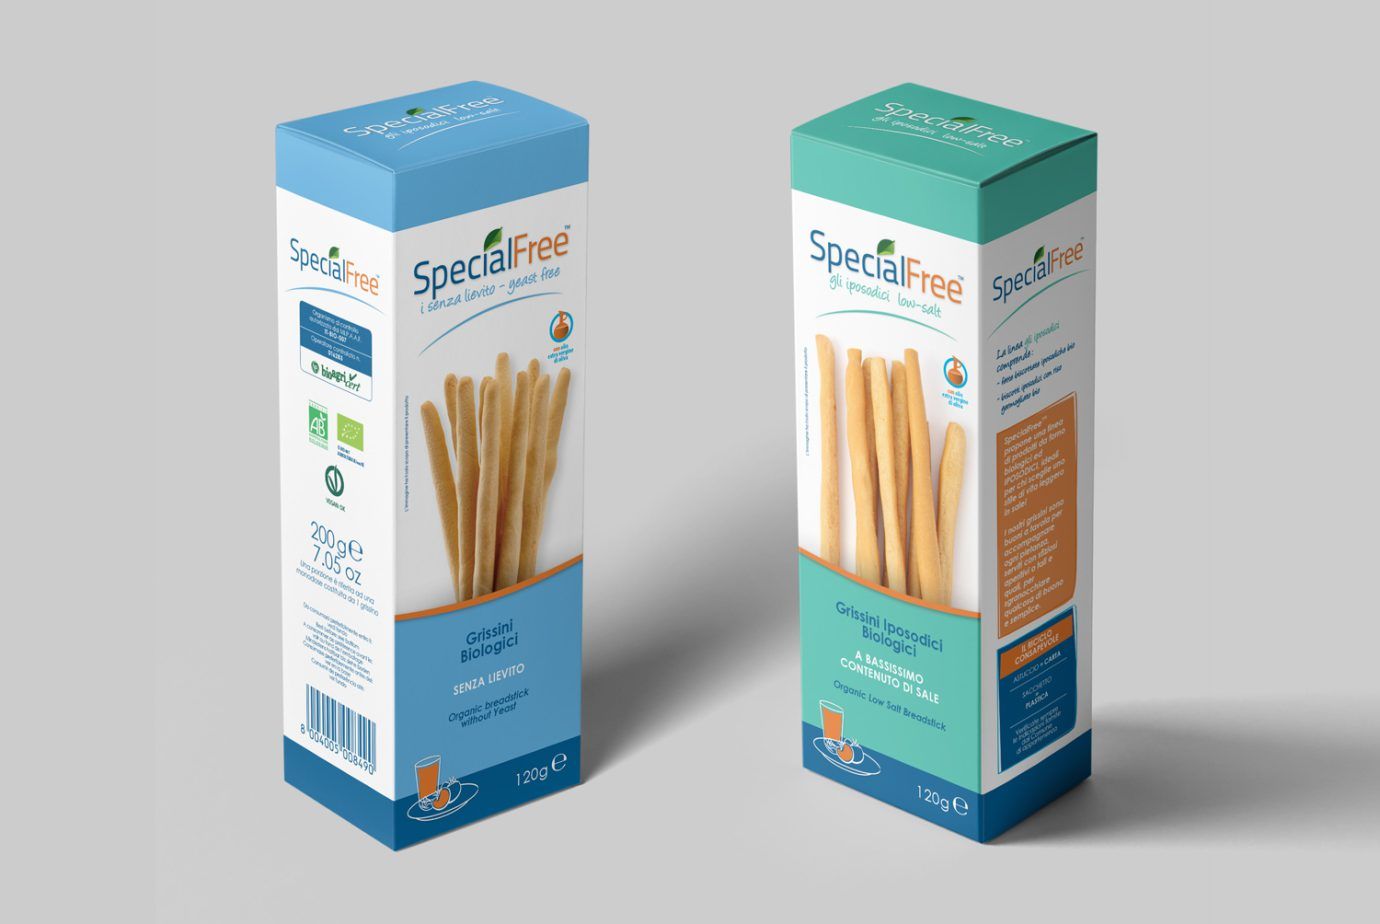 WillBe food packaging design